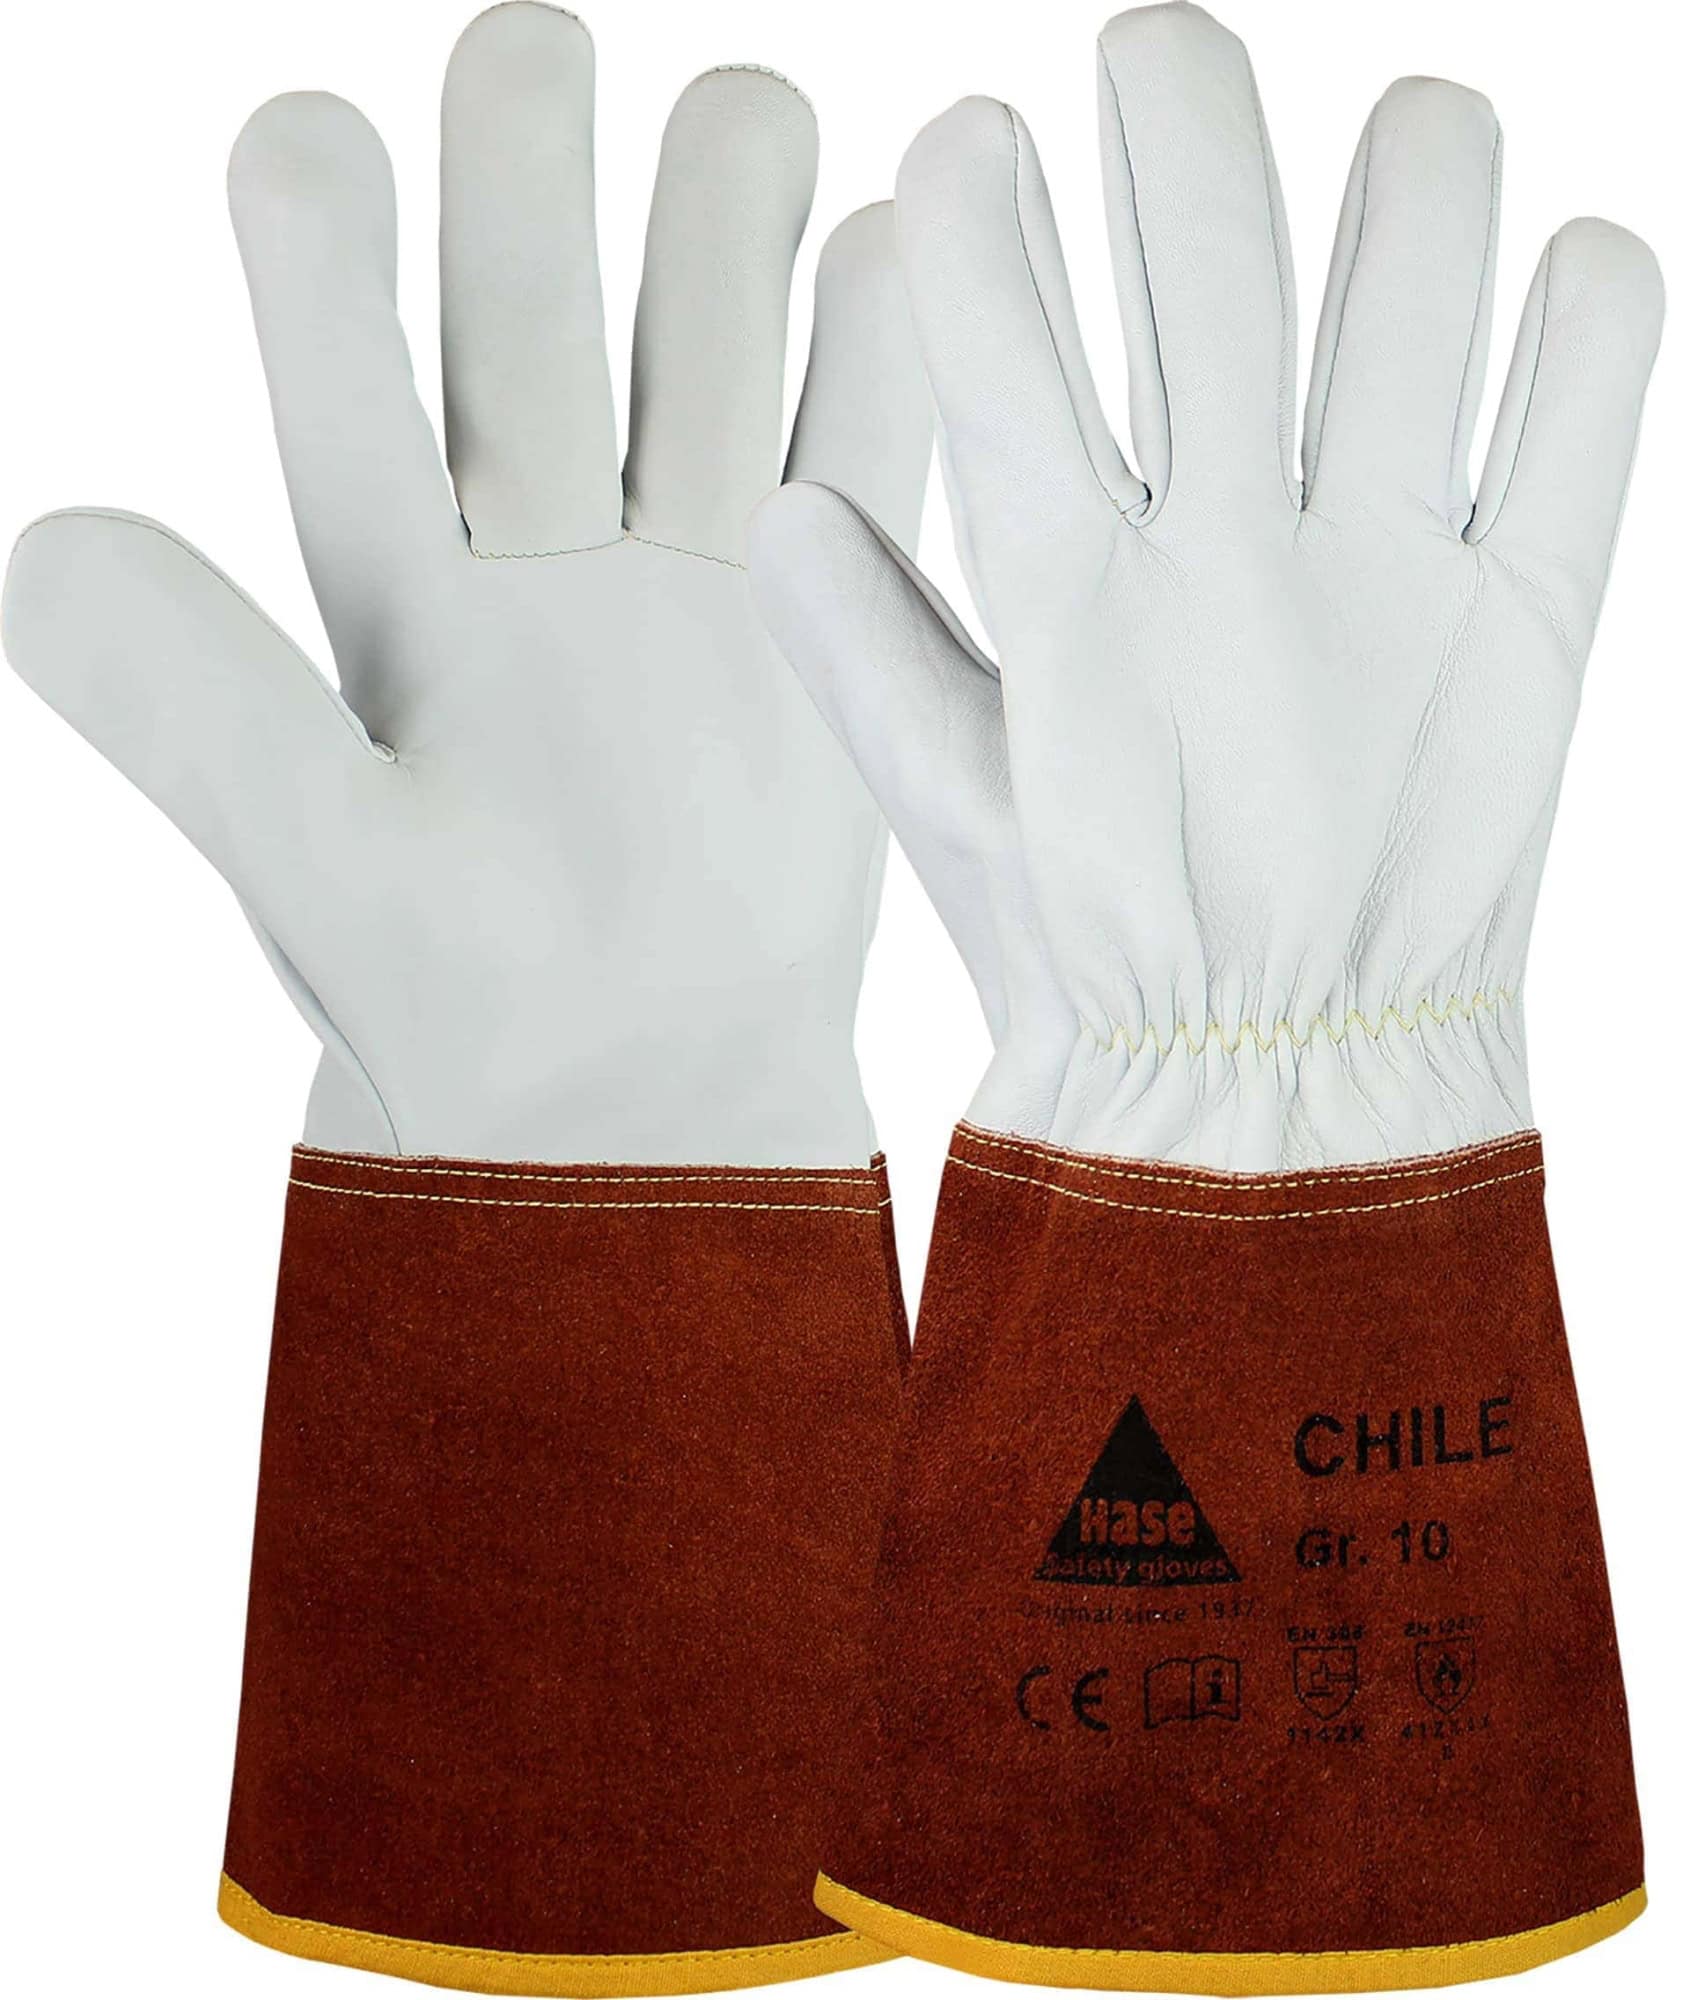 Hase Safety Gloves® CHILE 403840-12, Größe 12, Typ B, Kat. II, Natur/Dunkelbraun, Schweißerhandschuh für leichte Schweißarbeiten